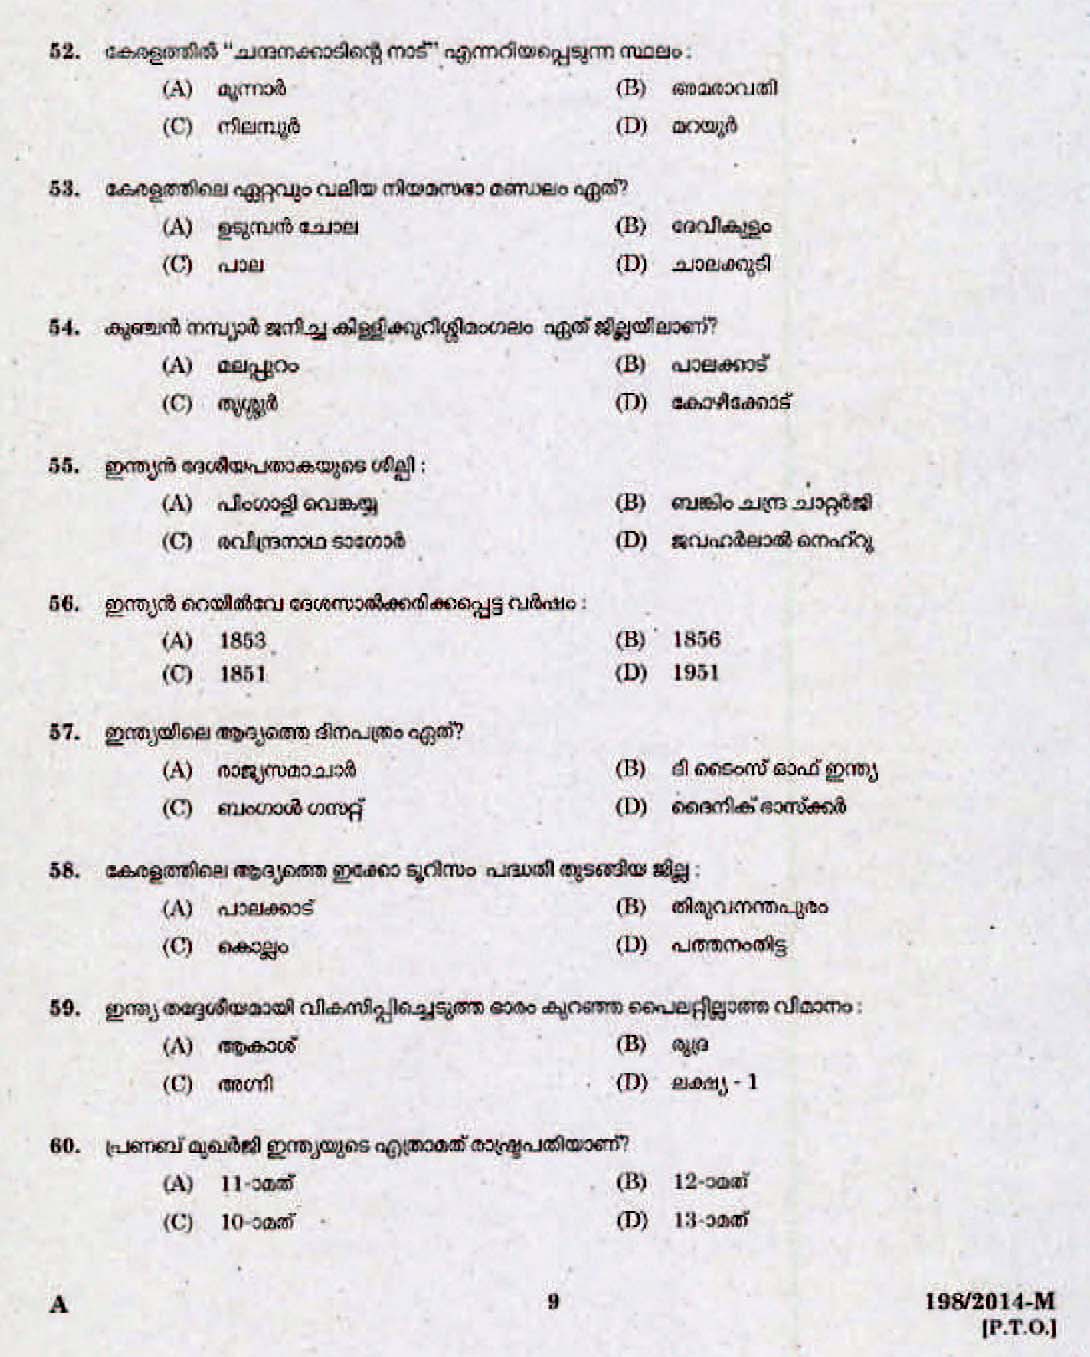 Kerala Last Grade Servants Exam 2014 Question Paper Code 1982014 M 7